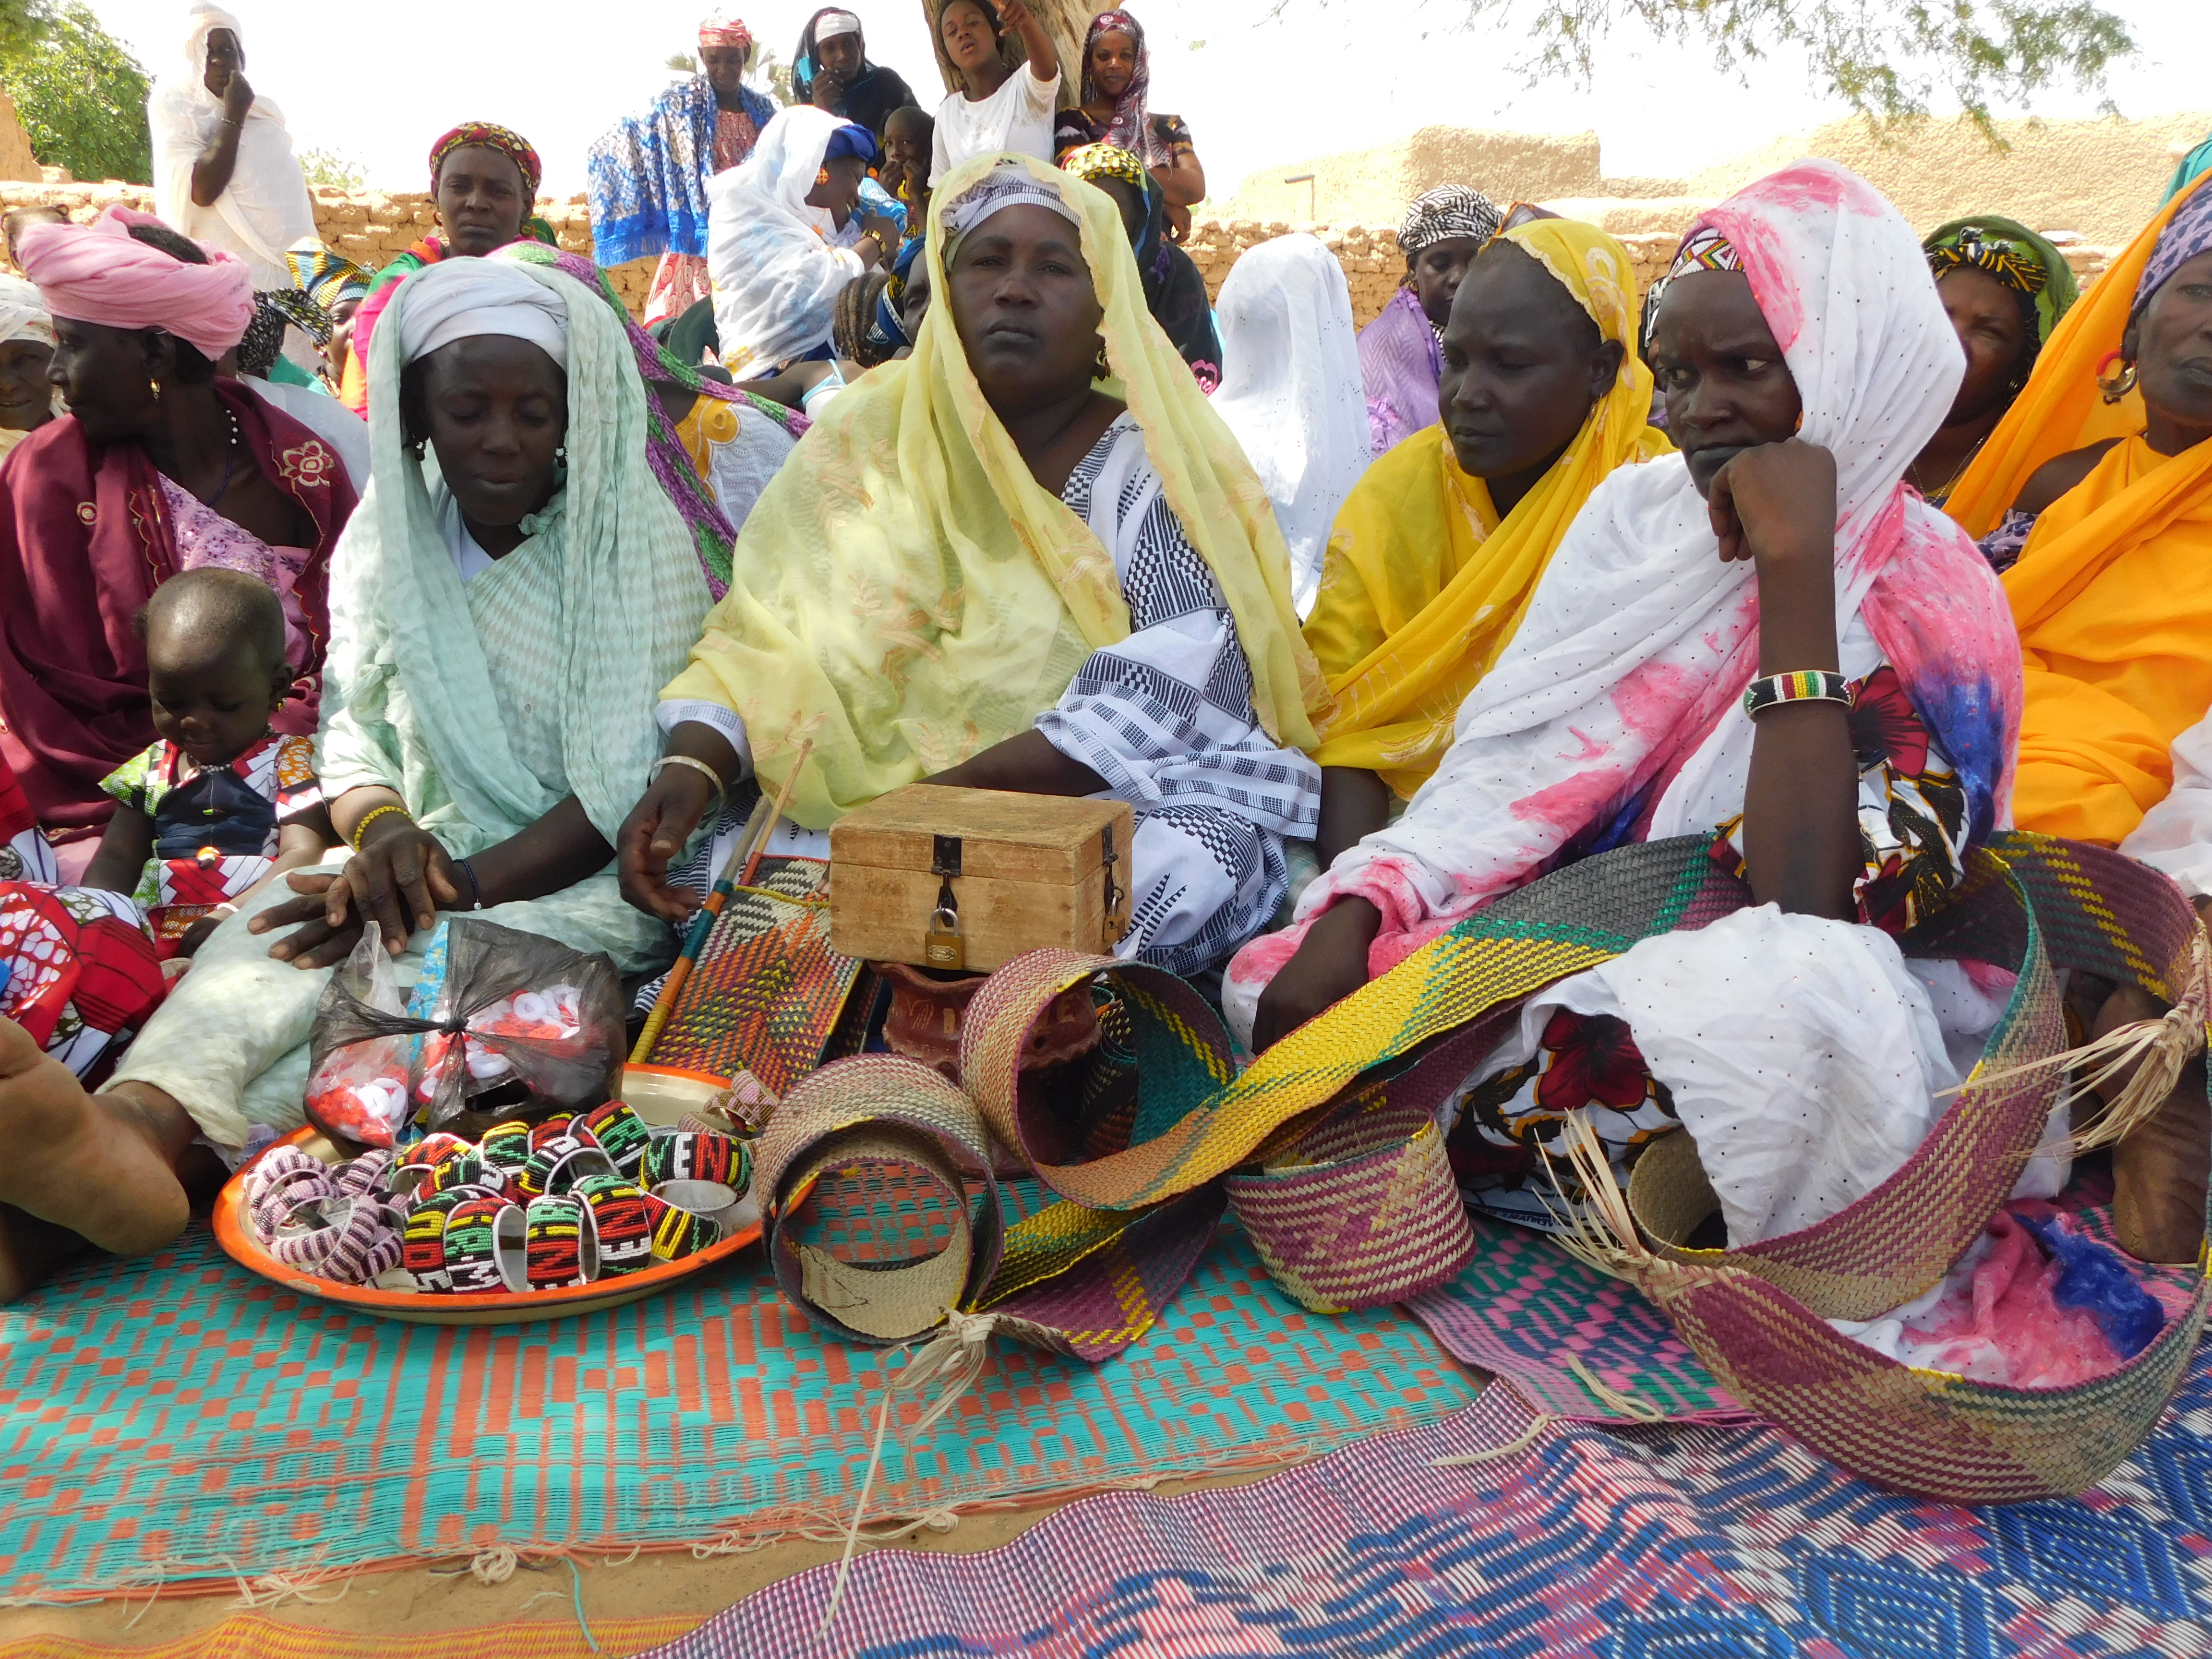 Frauen sitzen auf bunten Matten auf dem Boden. Vor ihnen liegen geflochtene Armbänder und andere kunsthandwerkliche Gegenstände.